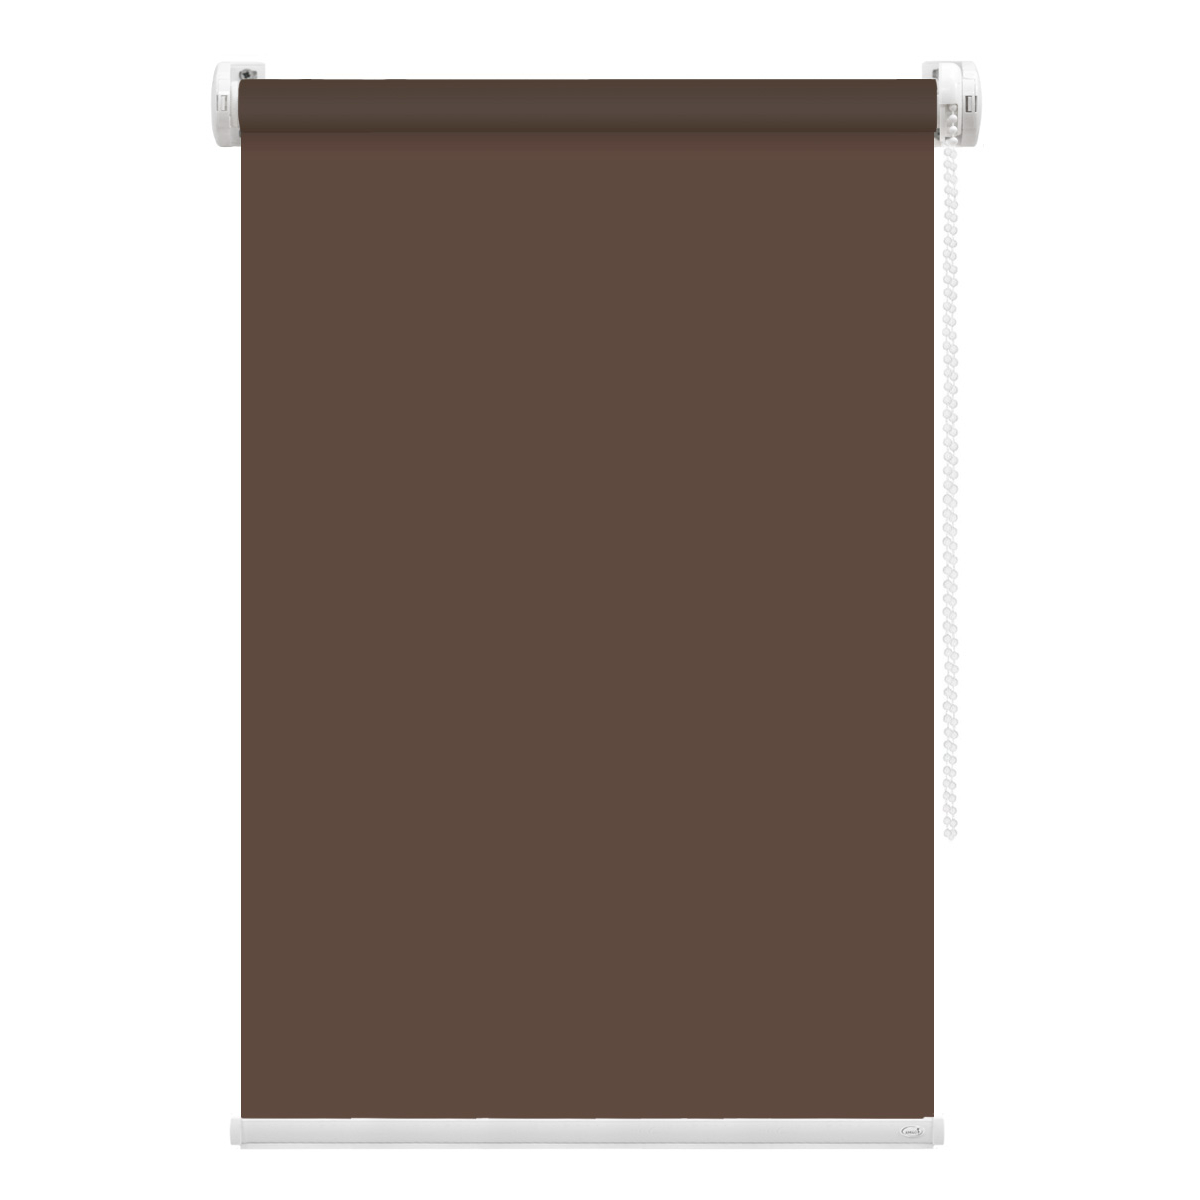 Рулонная штора FixLine Amigo Basic коричневая 55х160 см рулонная штора fixline amigo bloom серая 55х160 см